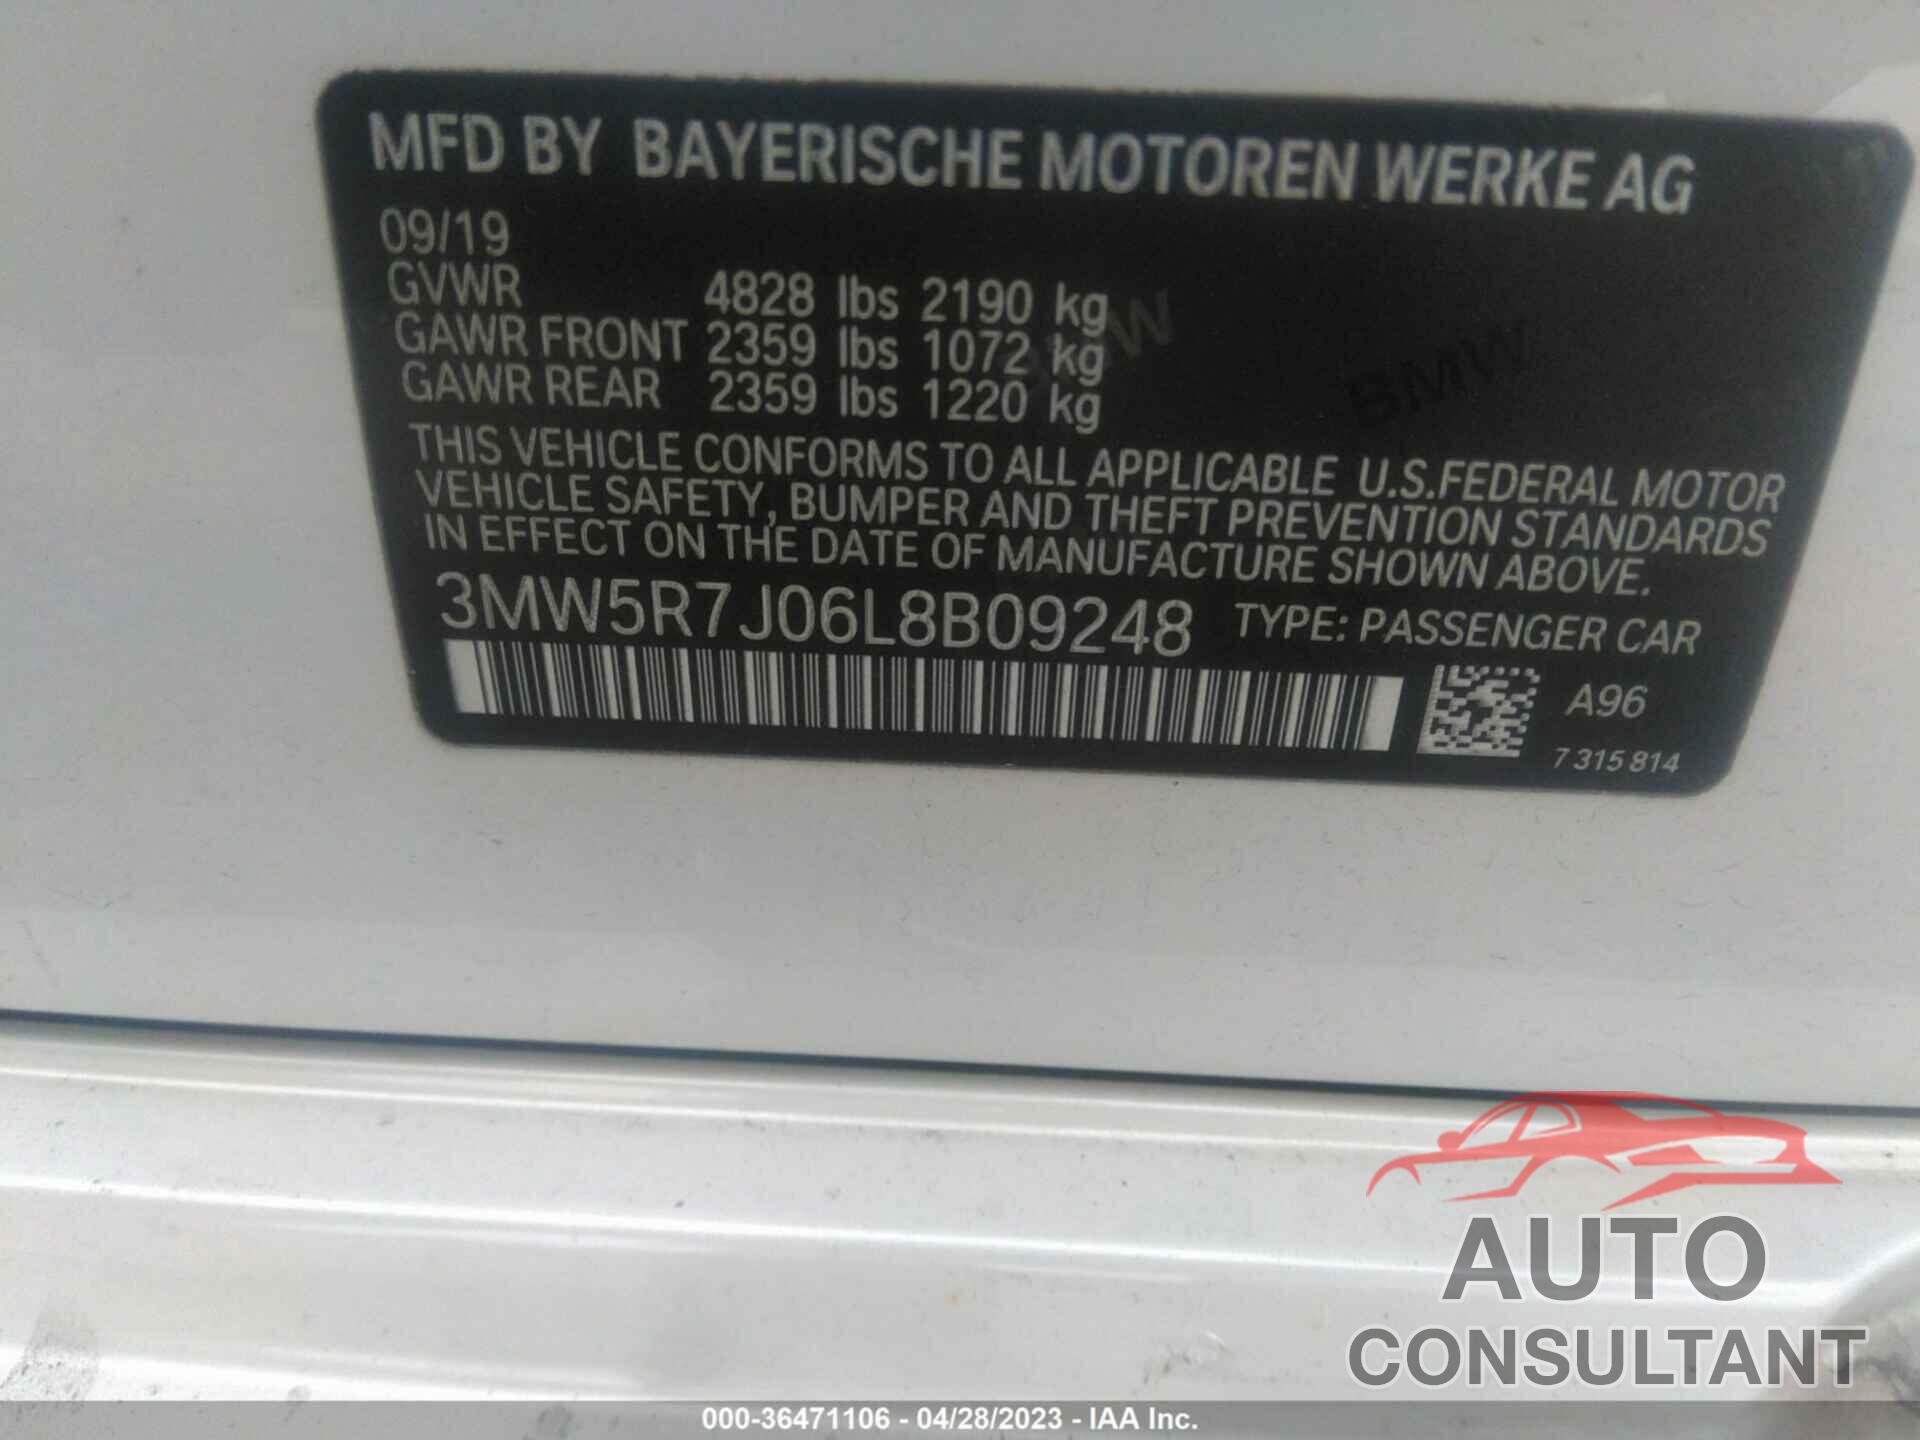 BMW 3 SERIES 2020 - 3MW5R7J06L8B09248